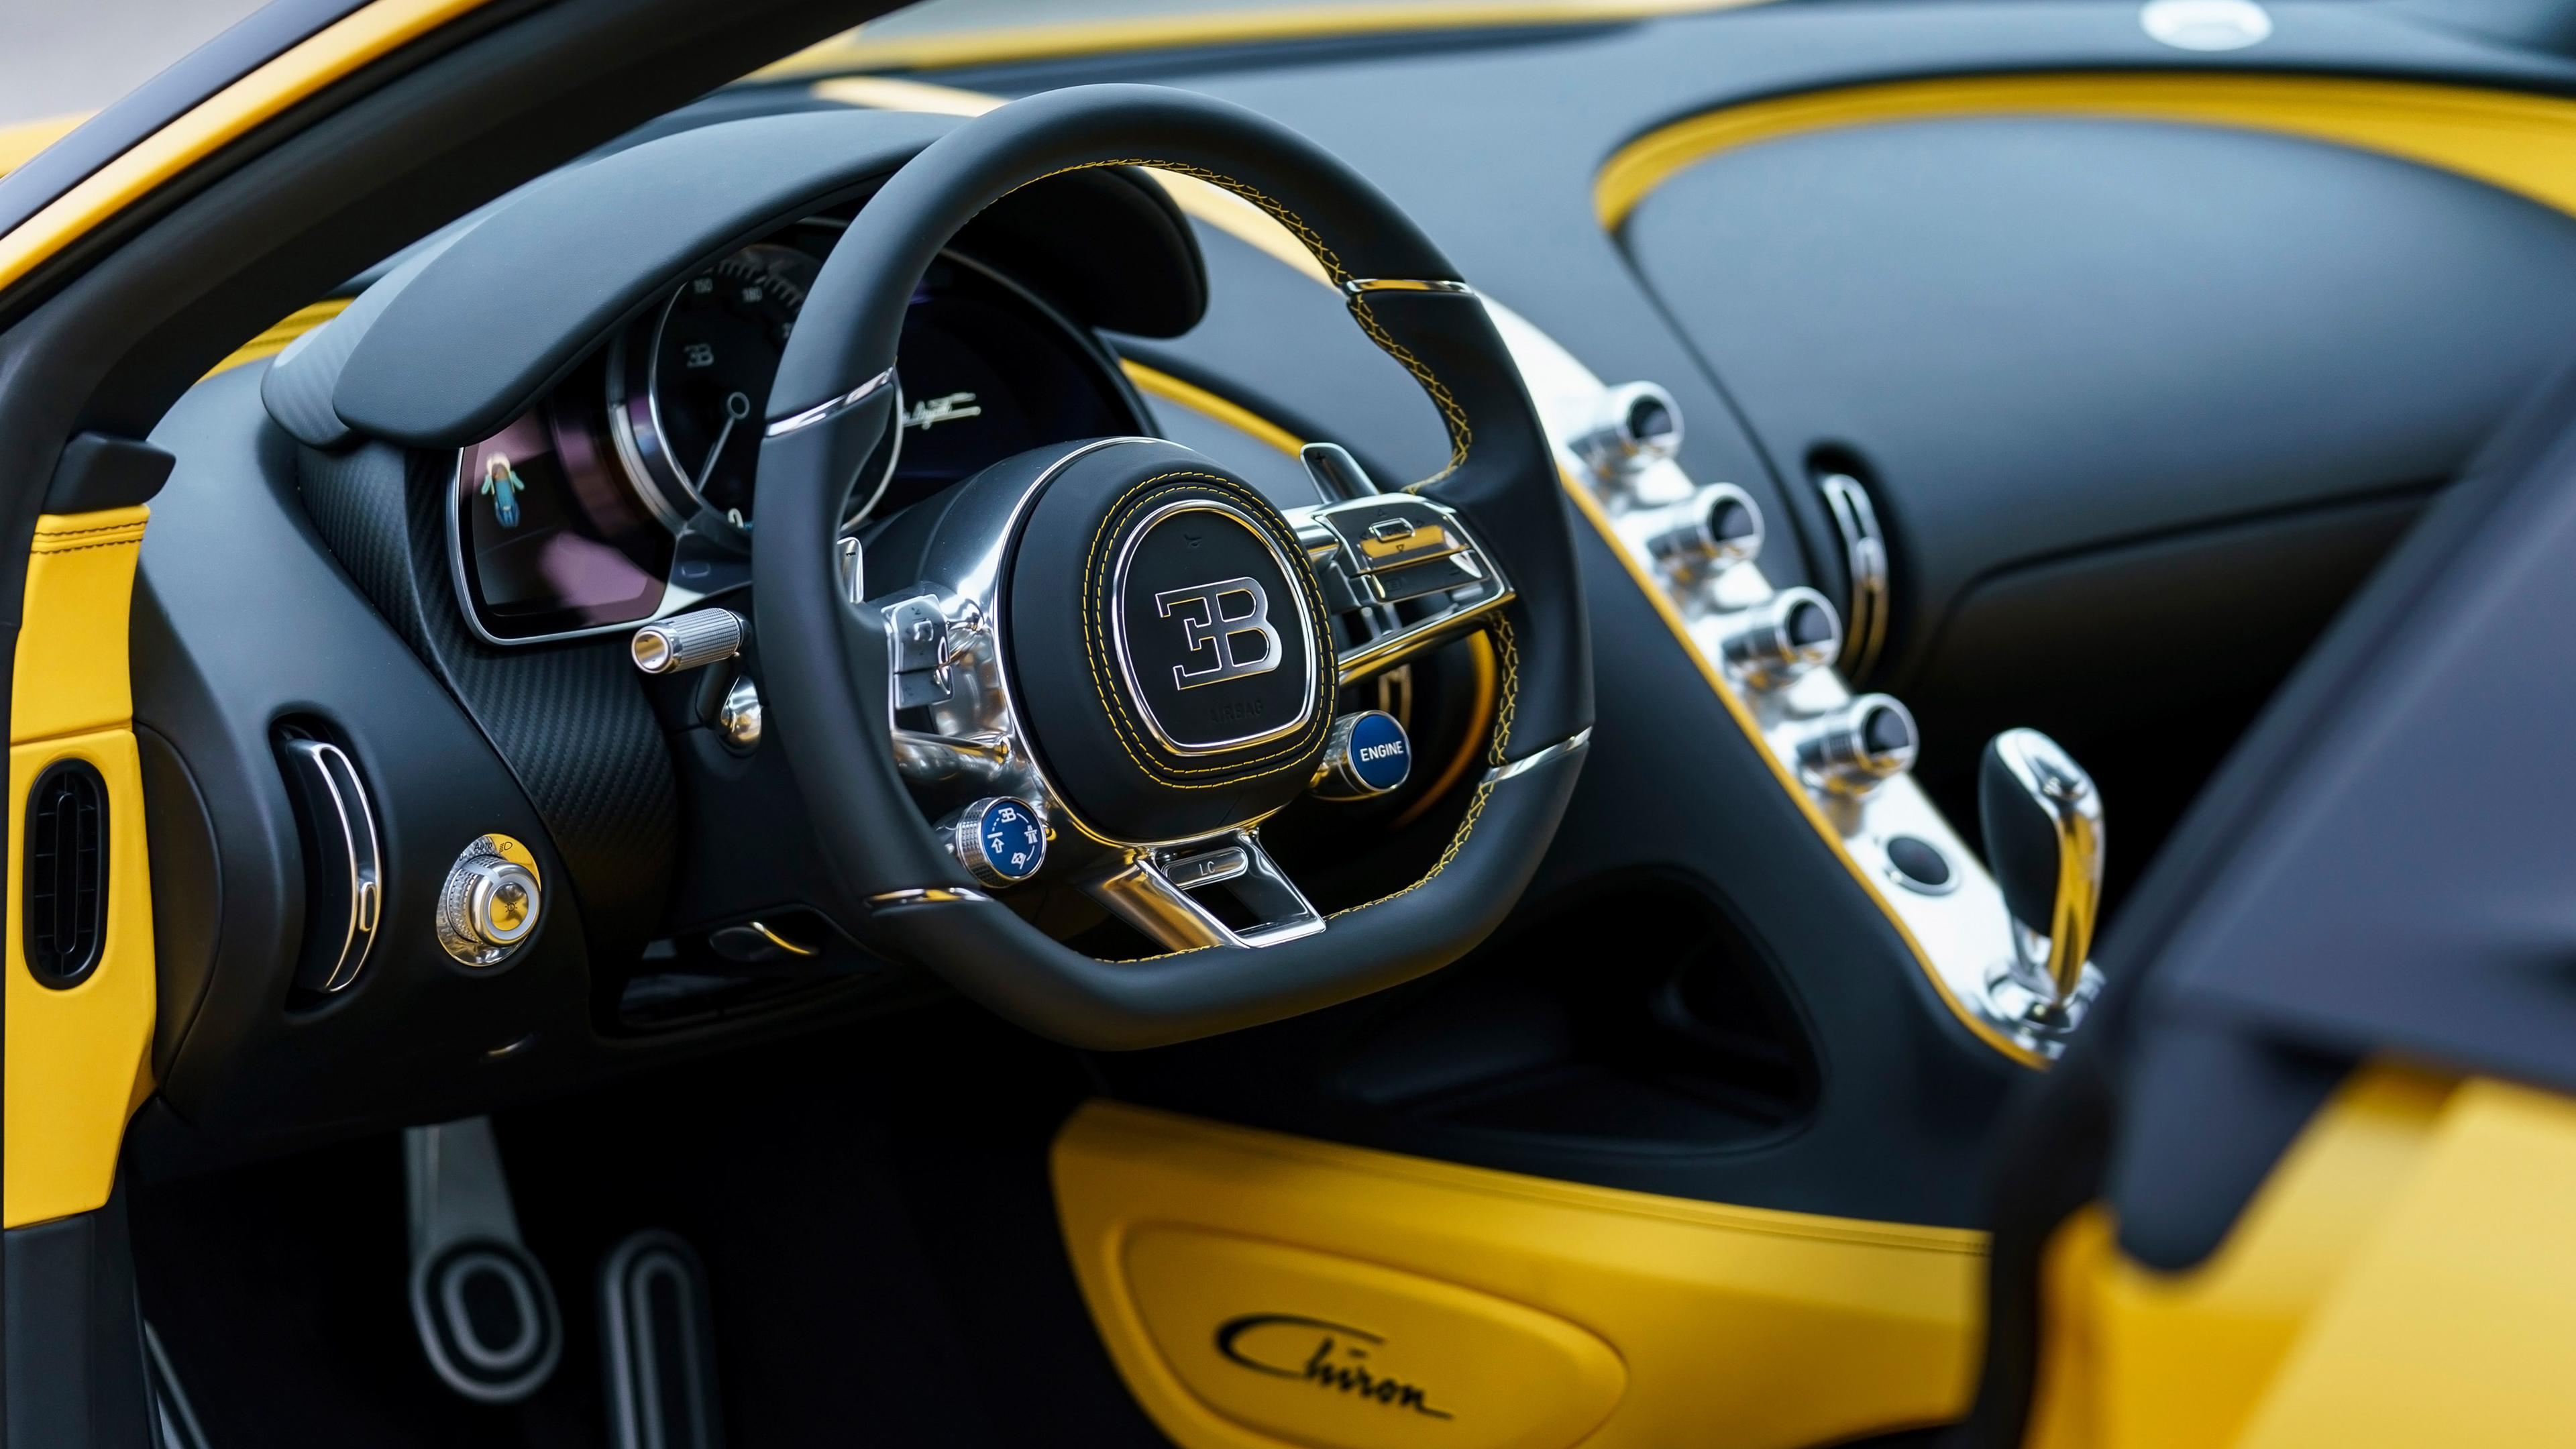 Bugatti Chiron Yellow and Black Interior Wallpaper. HD Car